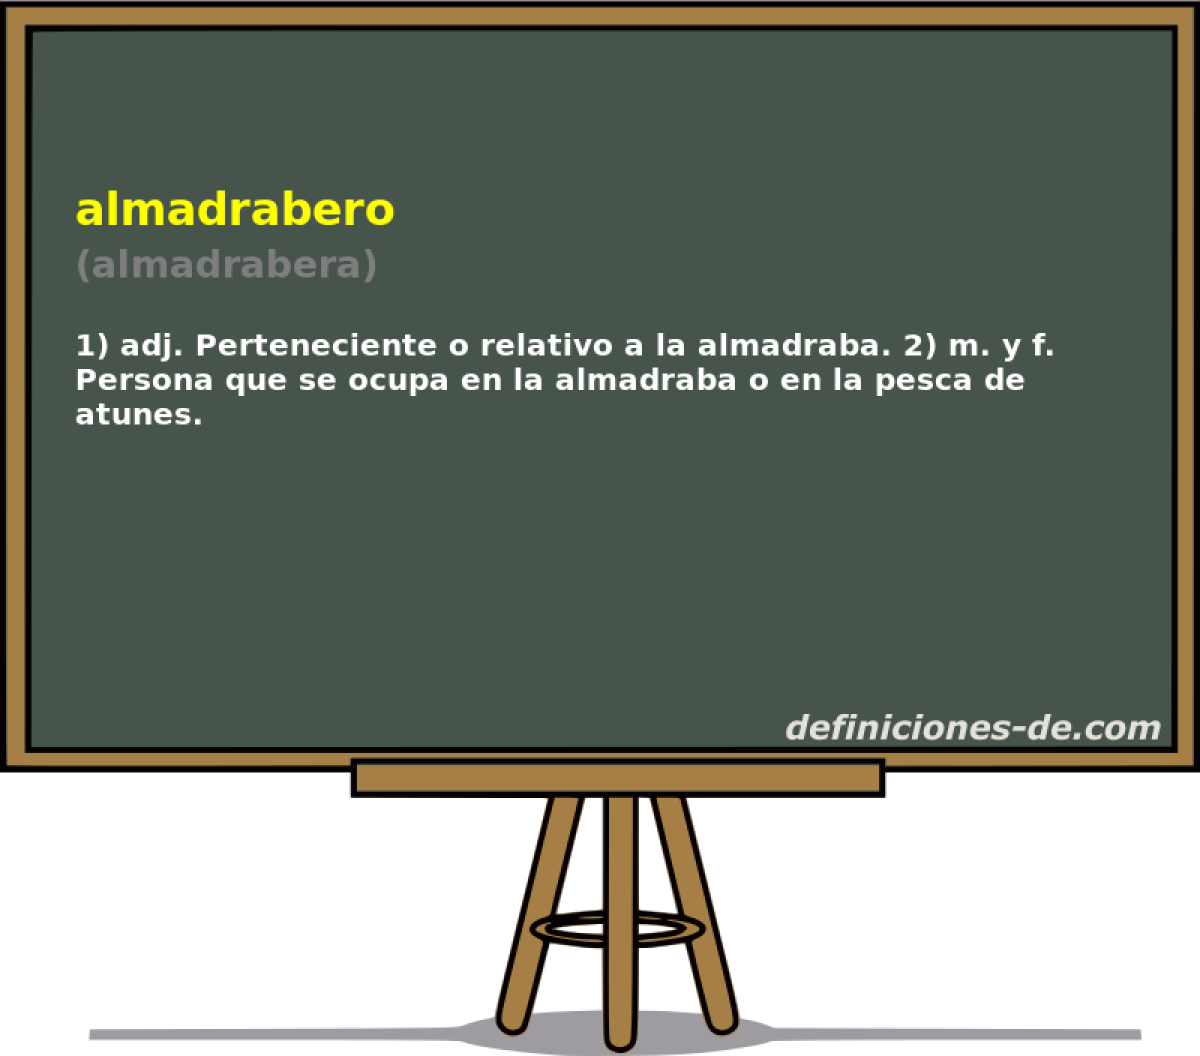 almadrabero (almadrabera)